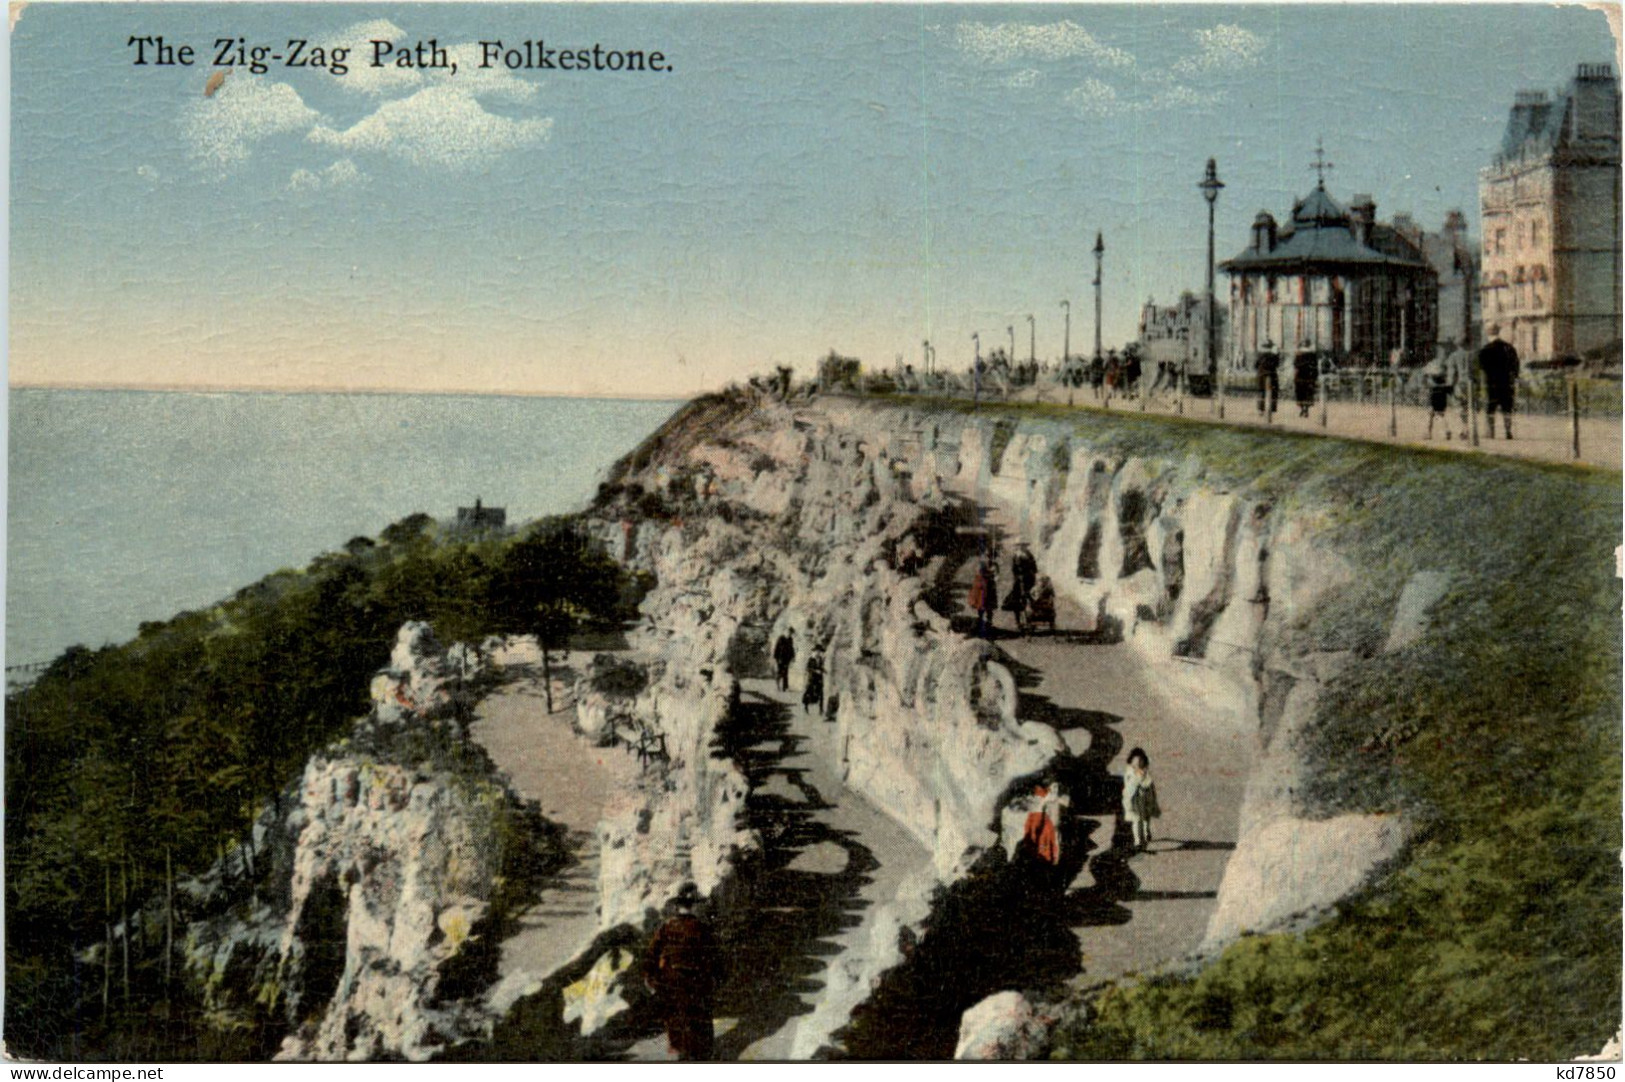 Folkestone - Zig-Zag Path - Folkestone